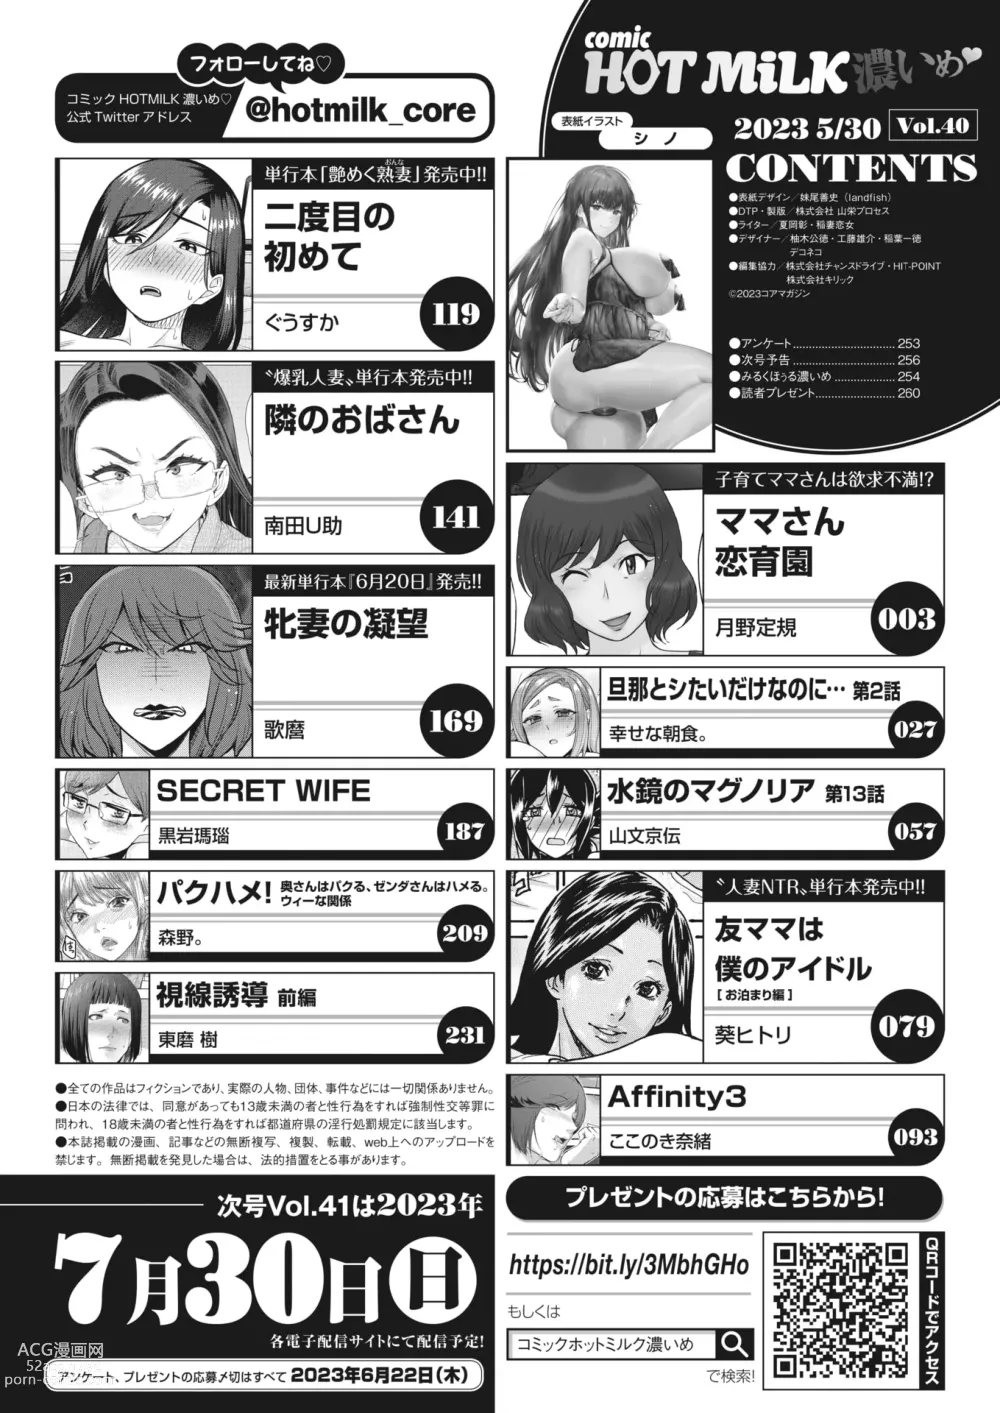 Page 3 of manga COMIC HOTMiLK Koime Vol. 40